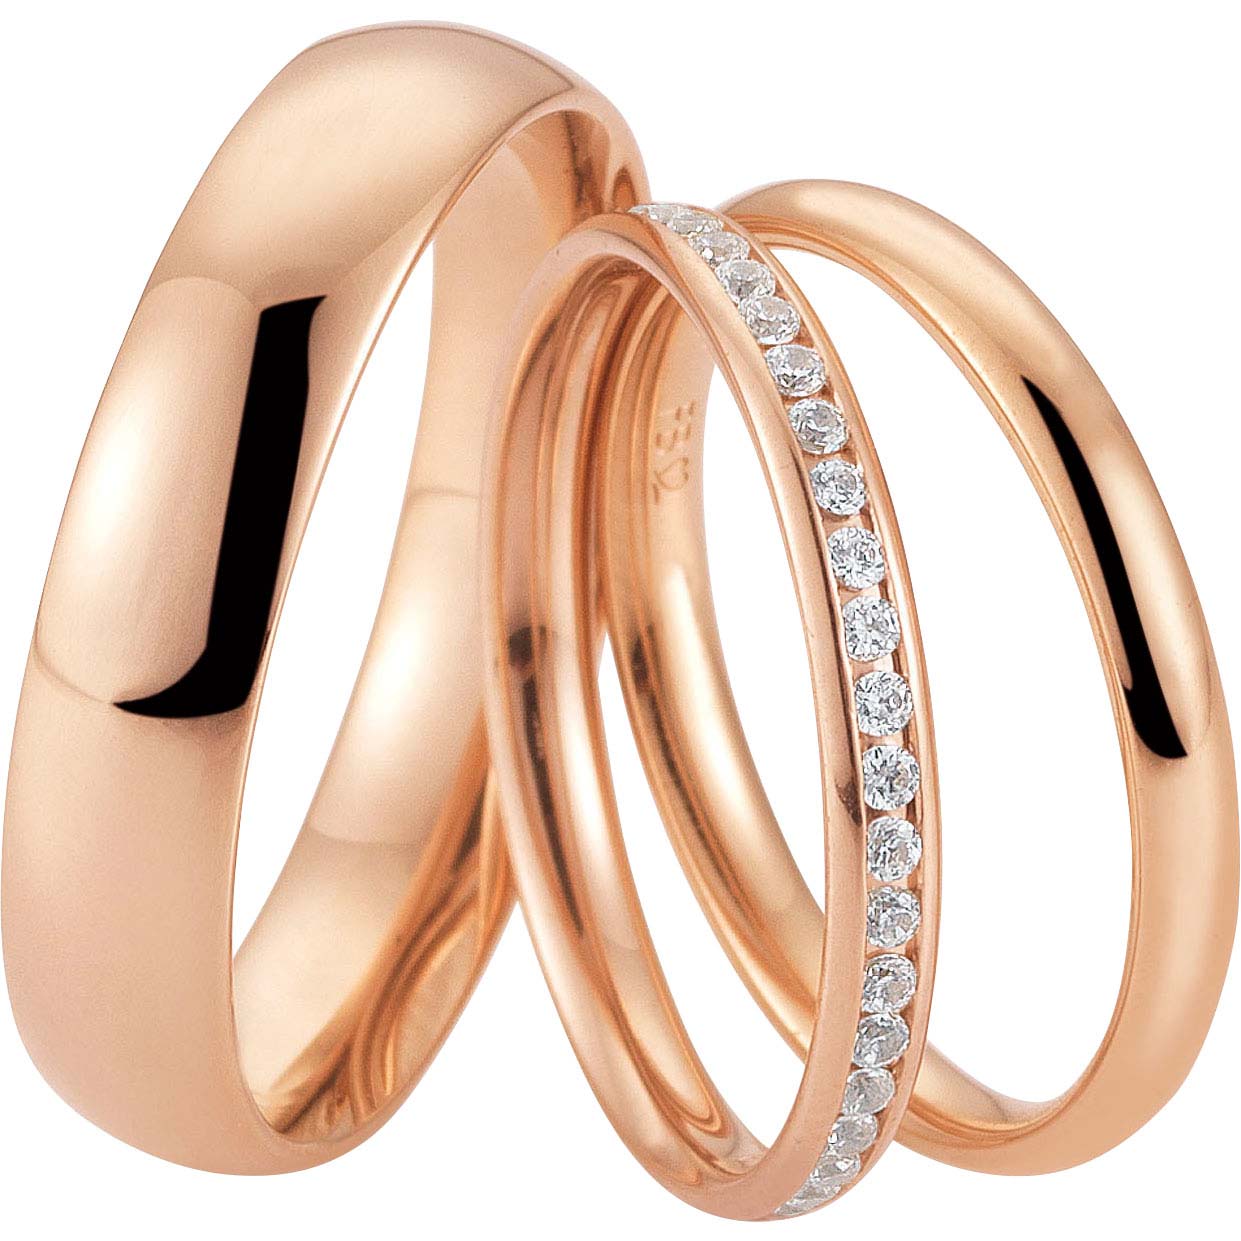 Biżuteria pierścionkowa powlekana różowym złotem na zamówienie Hurtownia biżuterii srebrnej